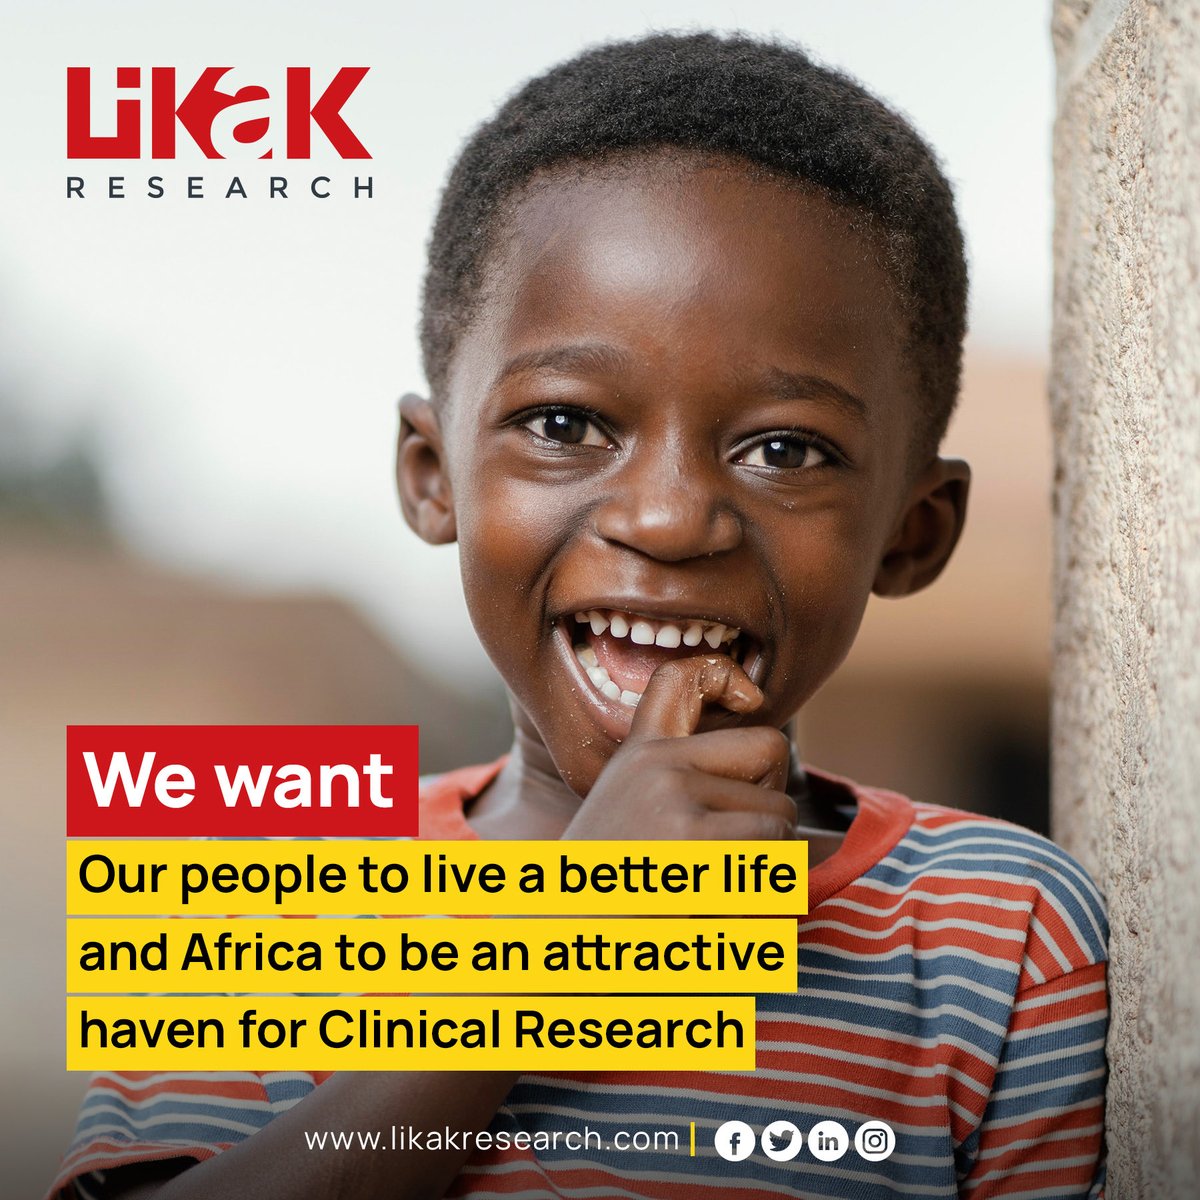 Depuis la création de LIKAK, notre ambition est de fournir un service d’excellence dans le domaine de la recherche clinique en Afrique.                                              
likakresearch.com

#likakresearch #rechercheclinique #Afrique #africa #healthcare